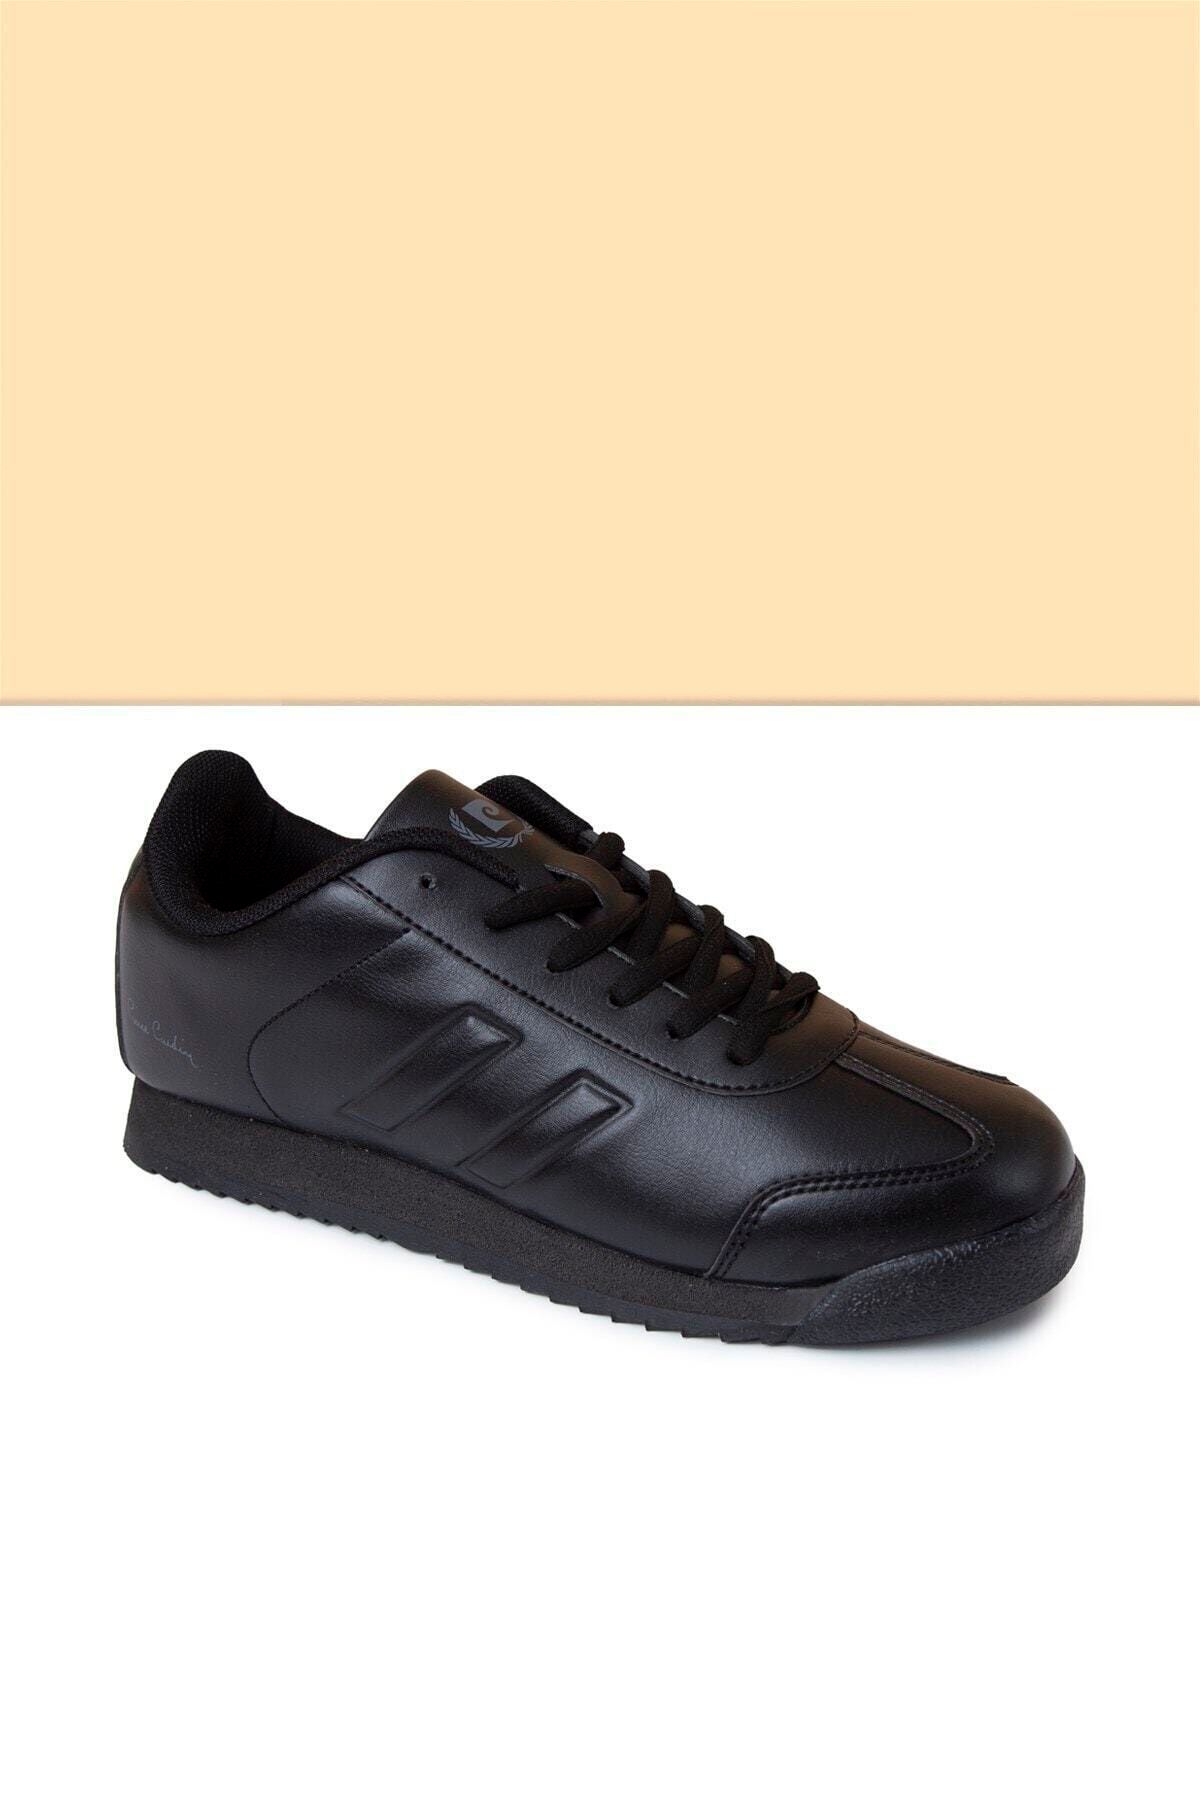 Pierre Cardin Erkek Siyah Ayakkabı Pc 30484